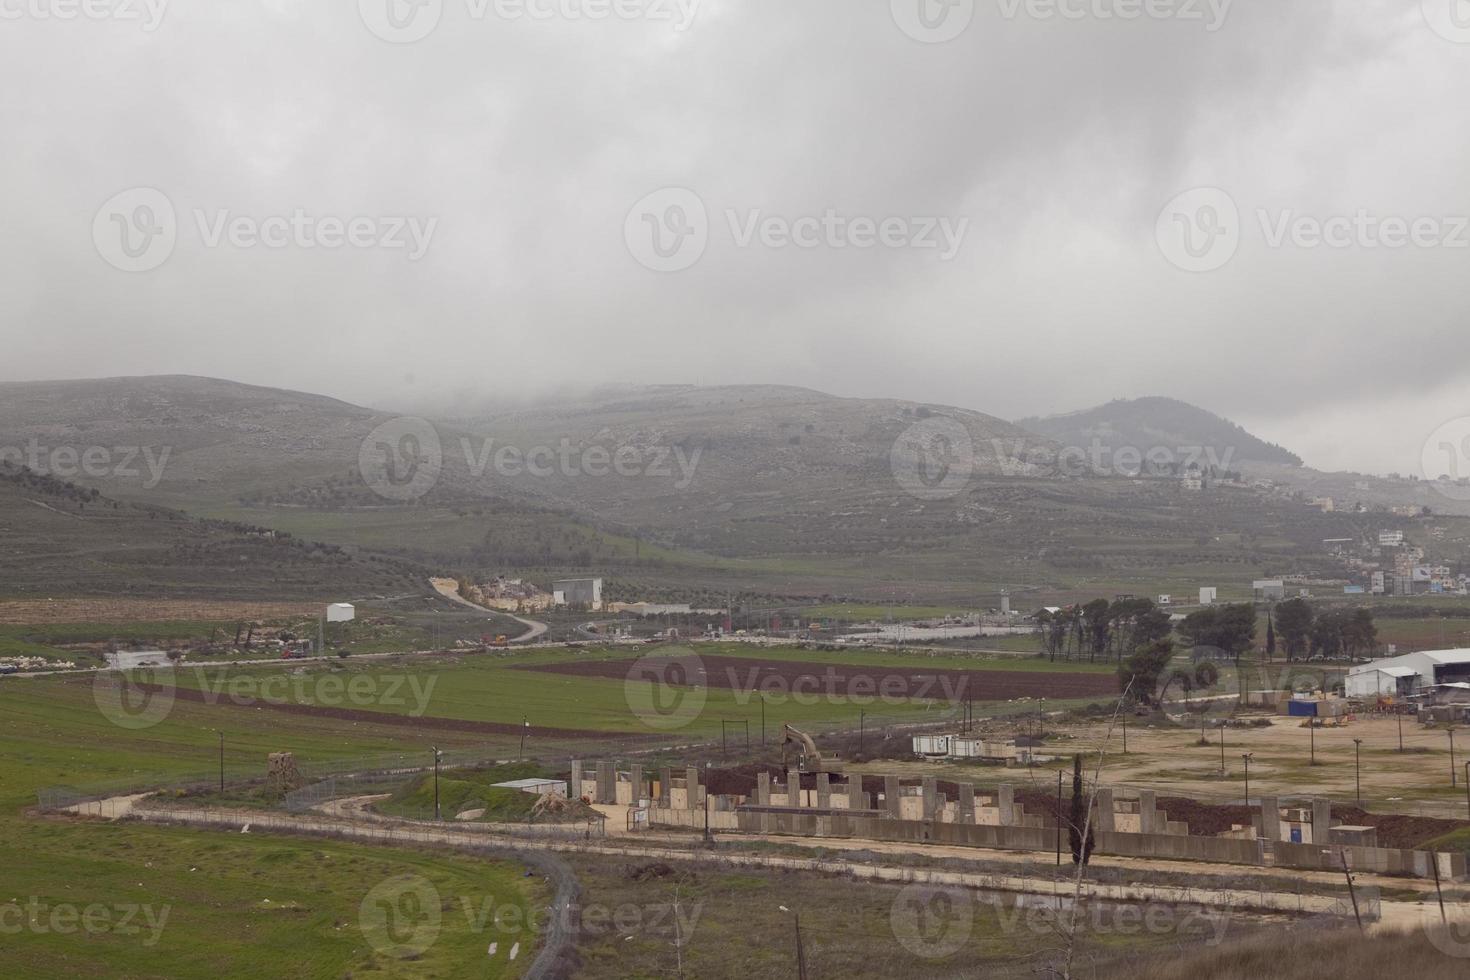 erstaunliche landschaften von israel, blicke auf das heilige land foto